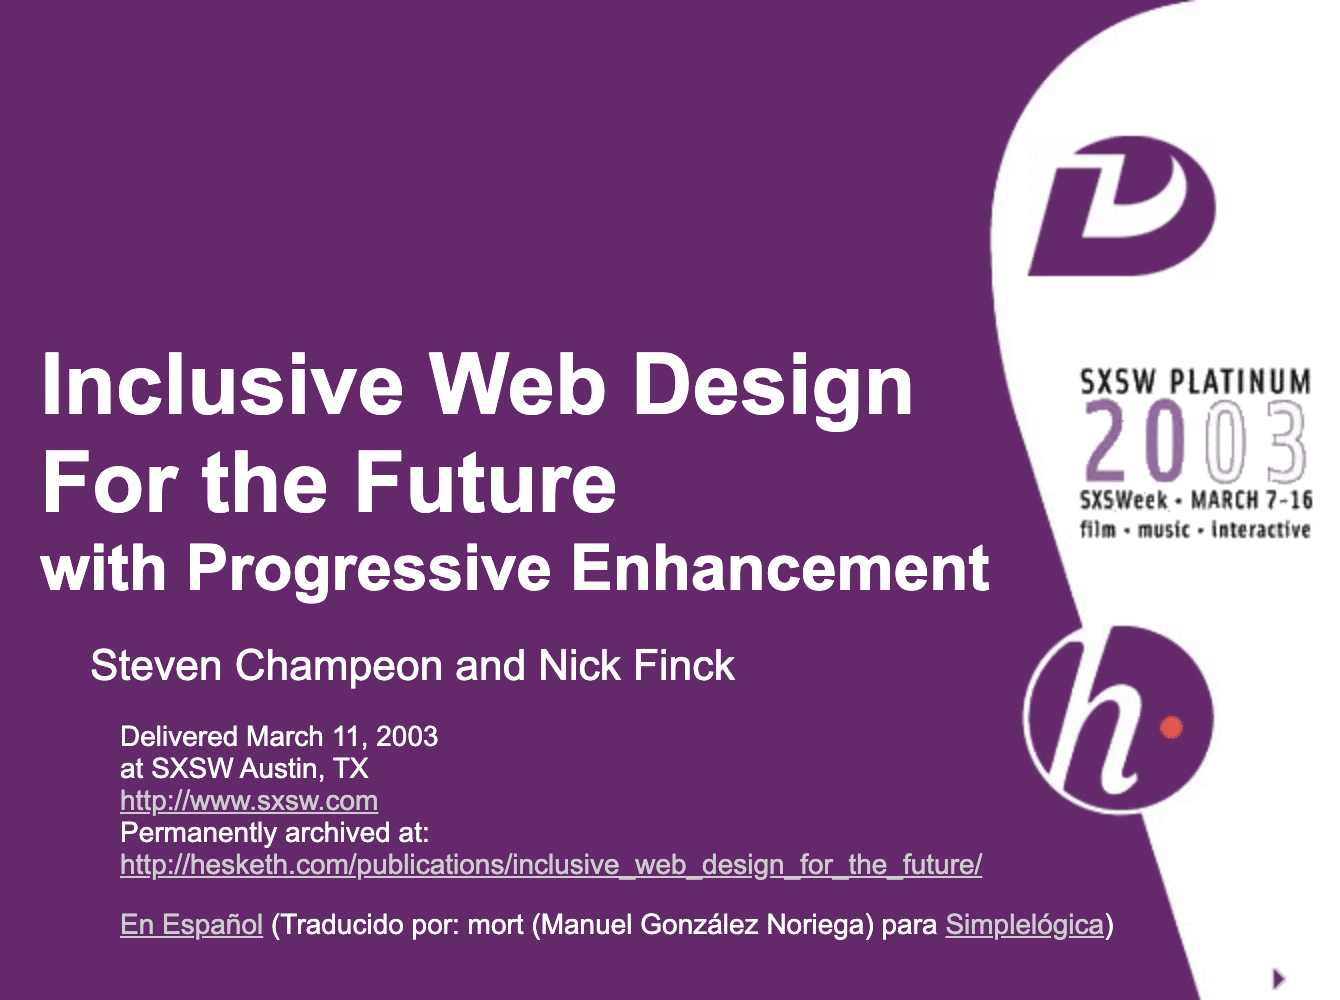 Web design inclusivo per il futuro con miglioramenti progressivi. Slide del titolo della presentazione originale di Finck e Champeon.